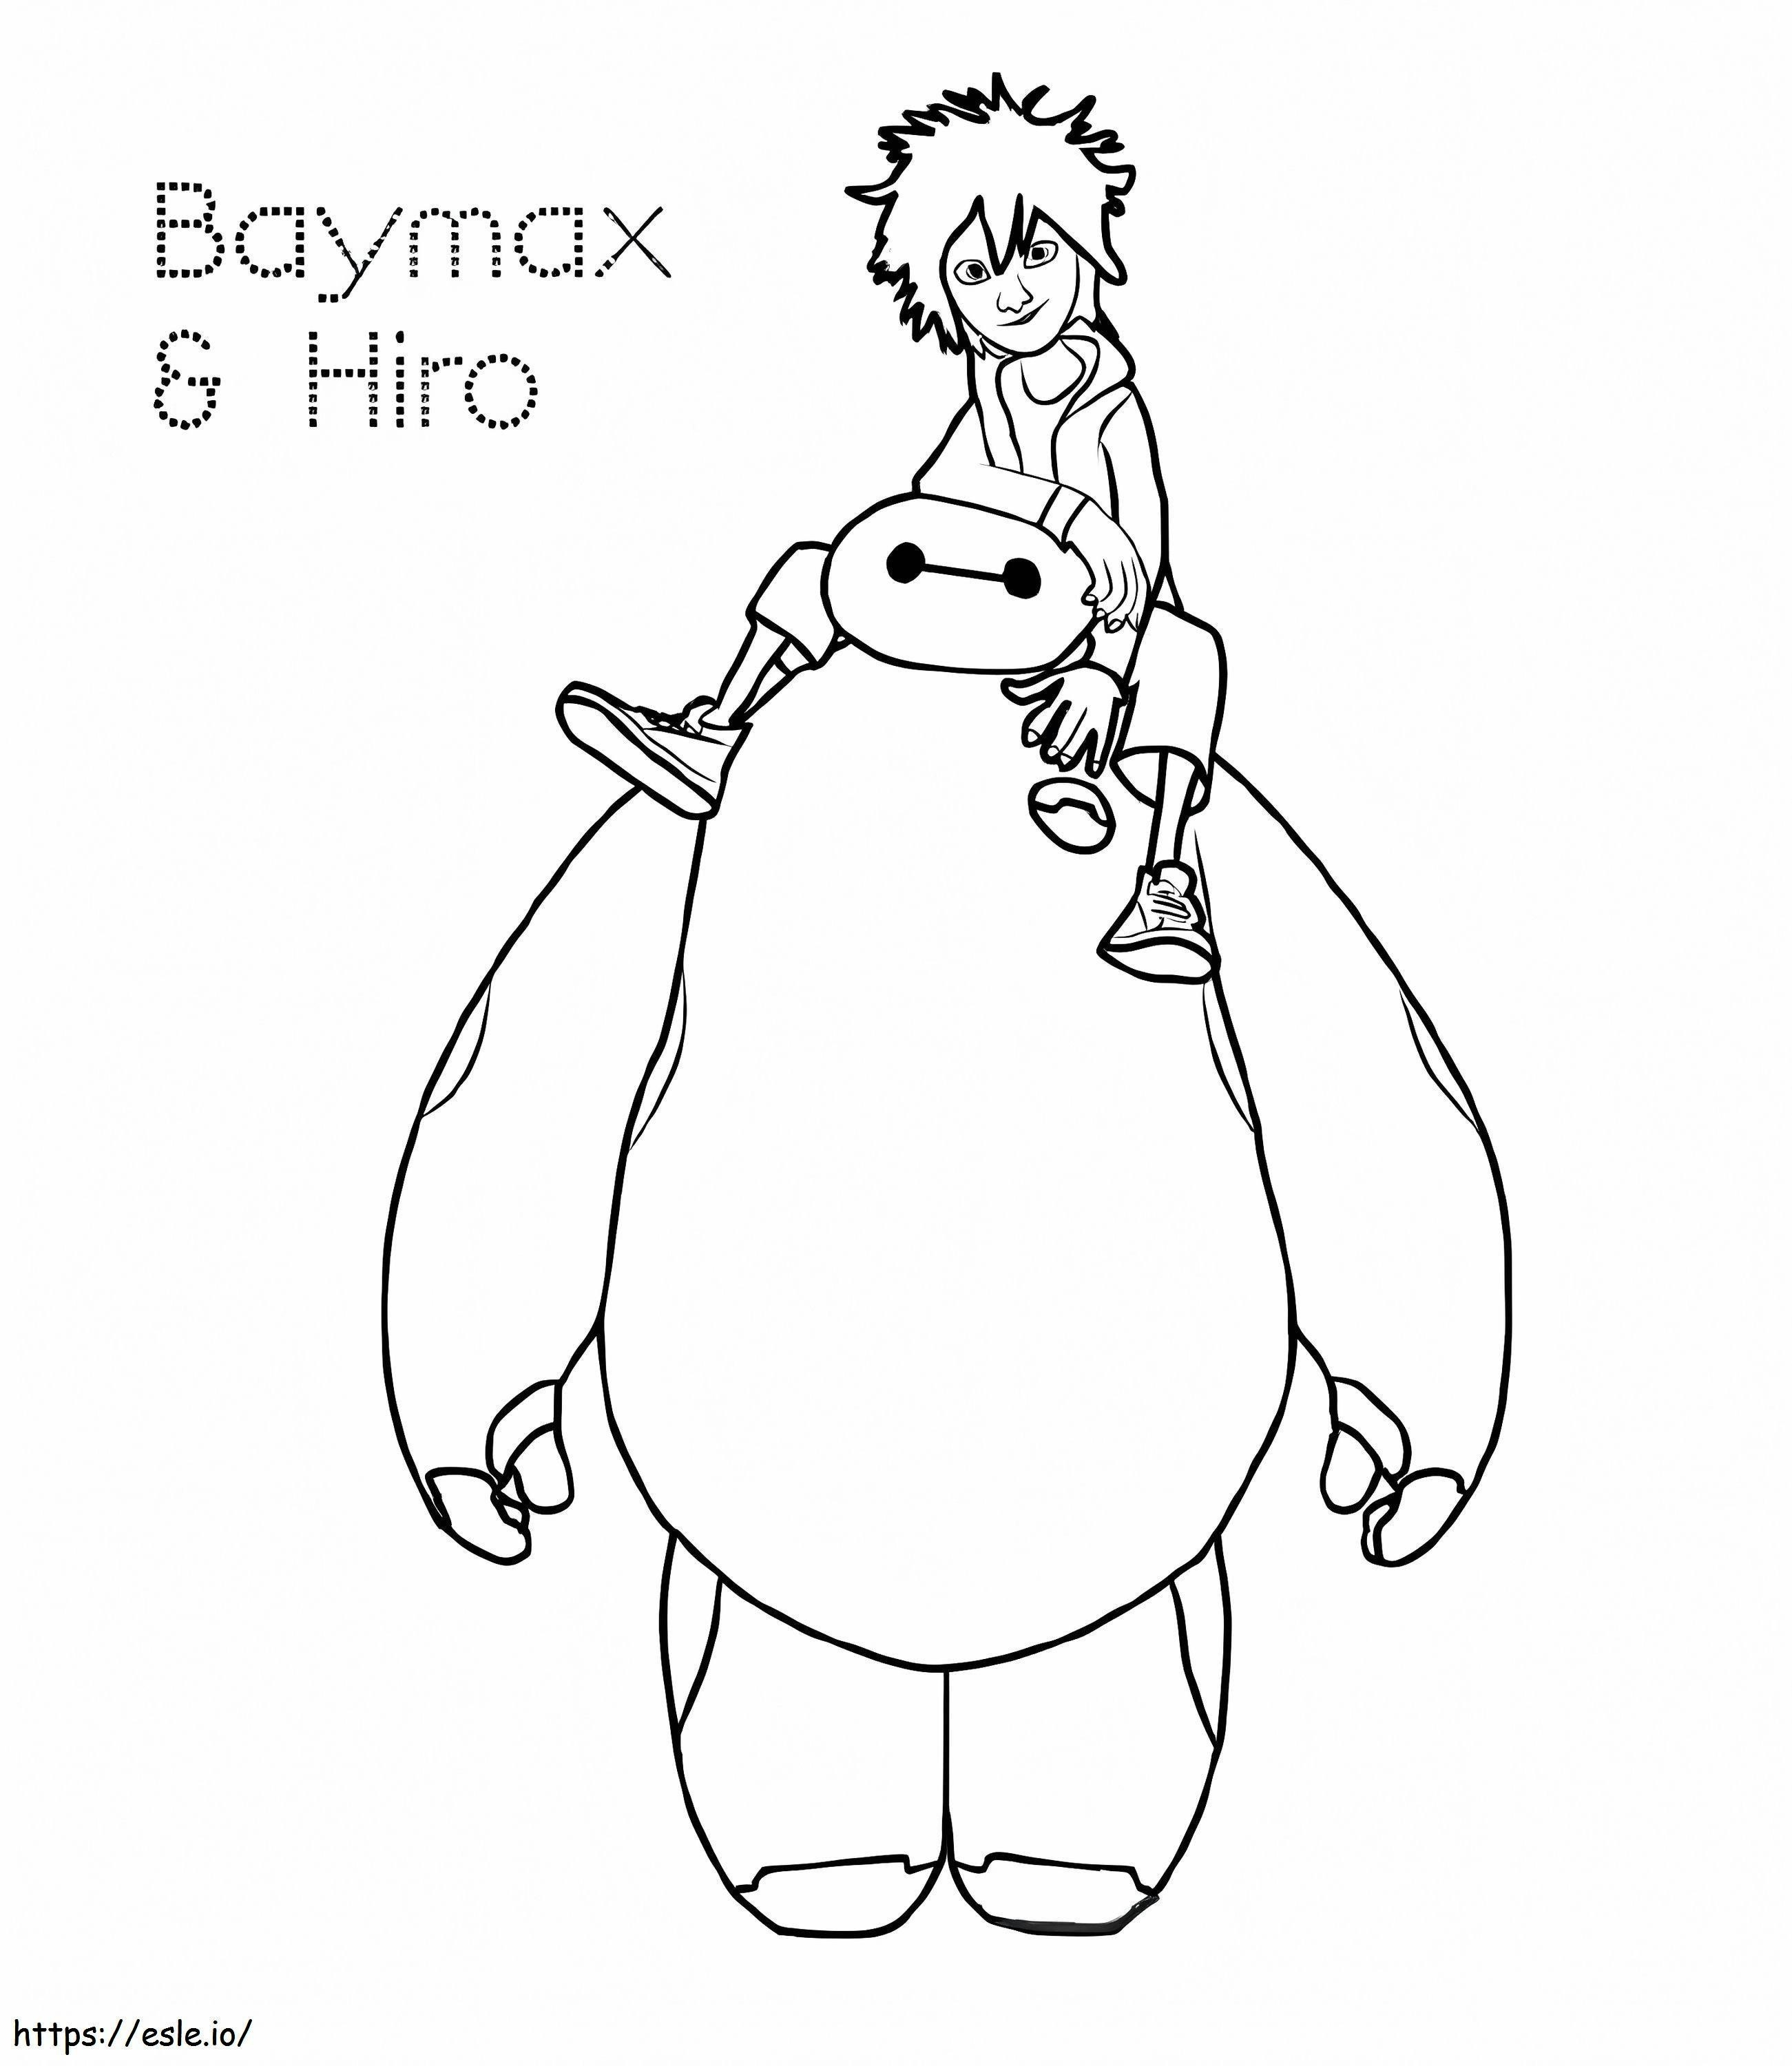 Hiro Y Baymax kolorowanka